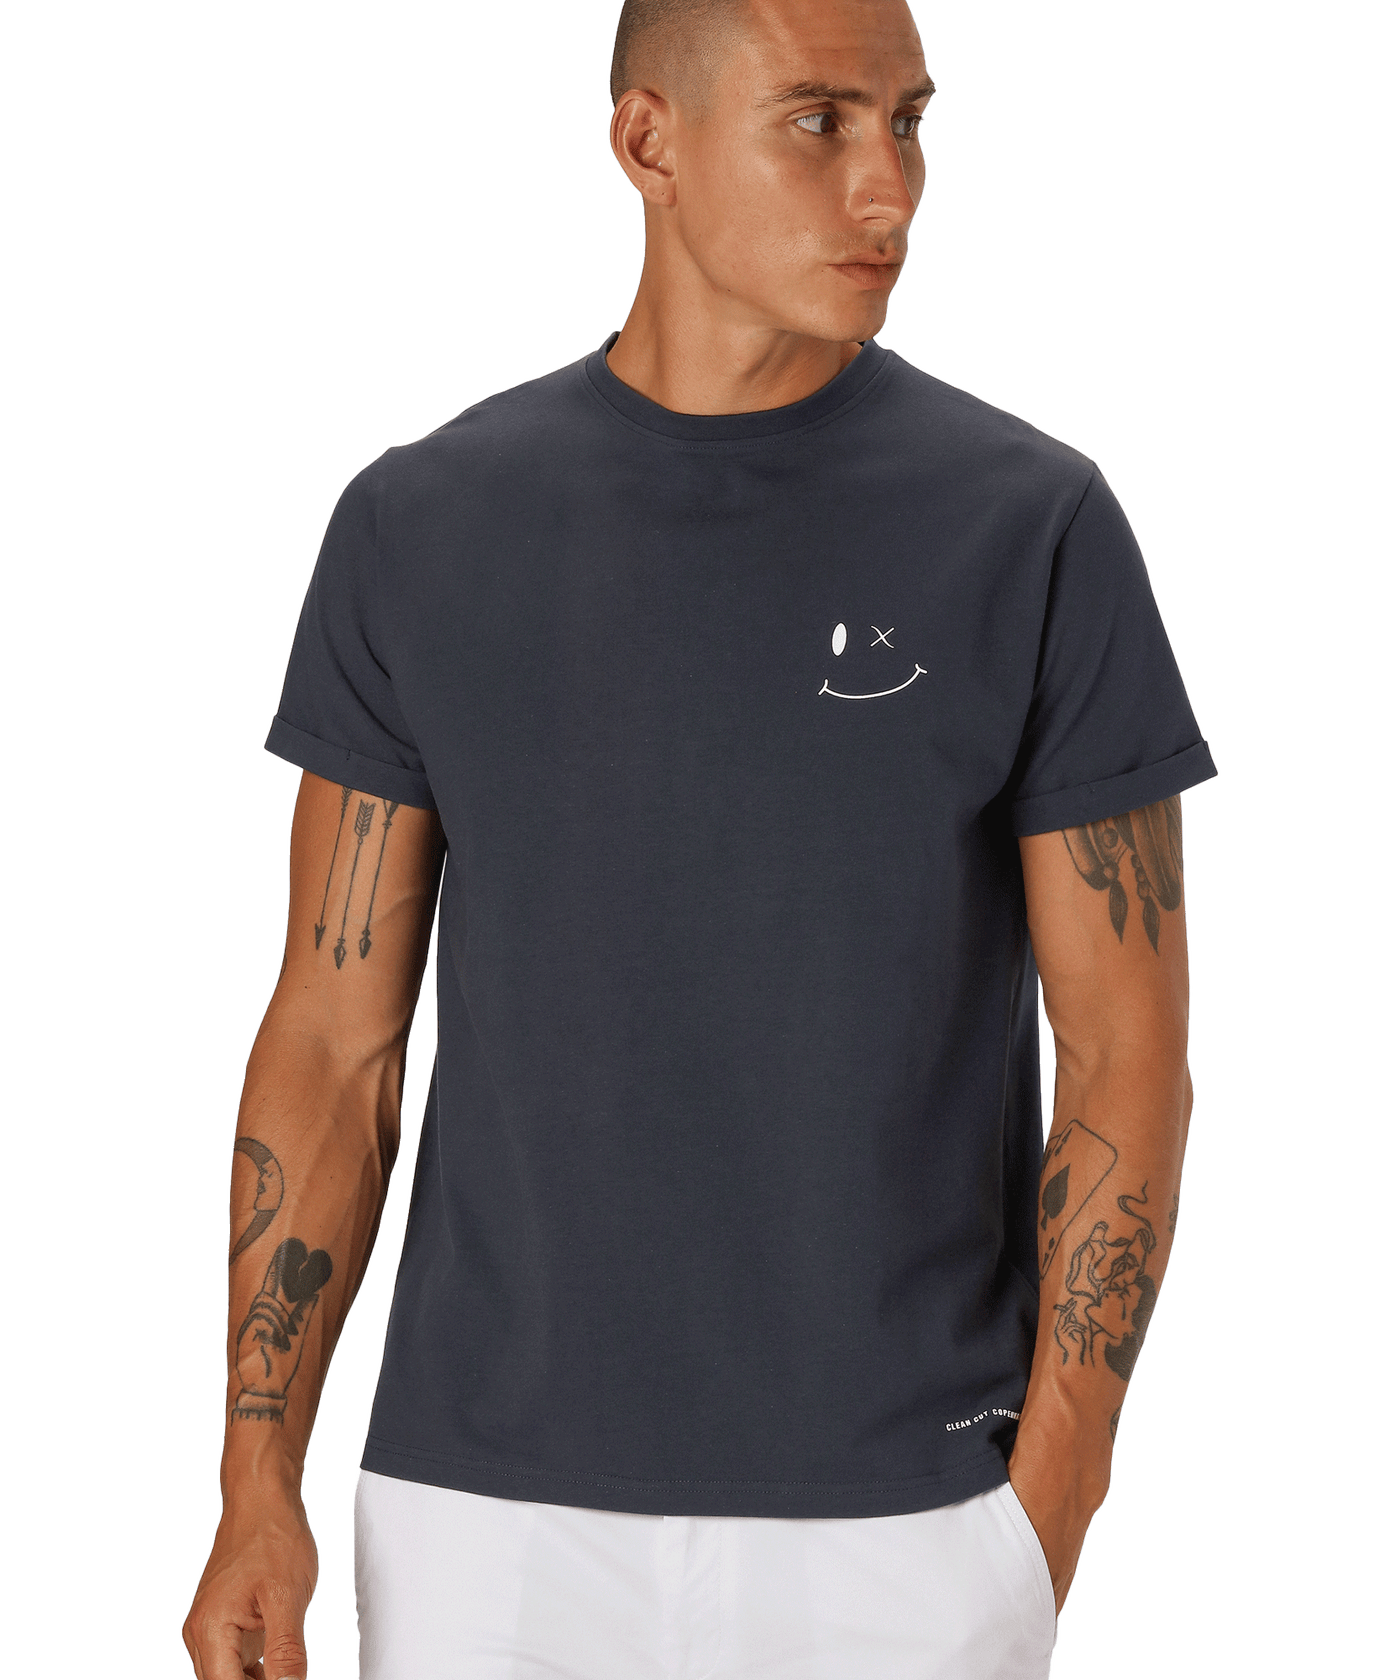 CLEANCUT - Cc2192 - Patrick Organic T-shirt - Navy